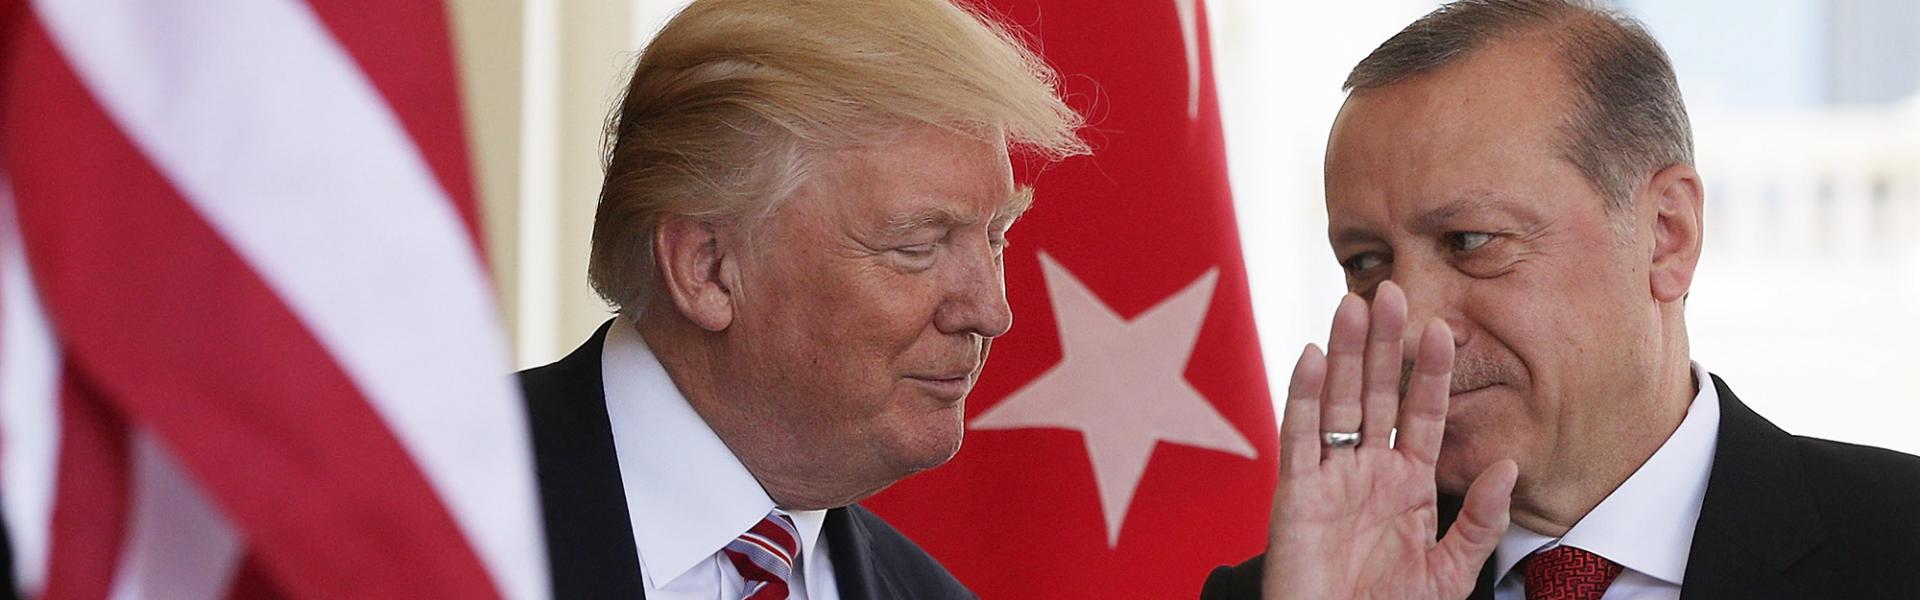 Η απόσυρση των ΗΠΑ από τη συμφωνία με το Ιράν, θα οδηγήσει στην αύξηση της έντασης με την Τουρκία